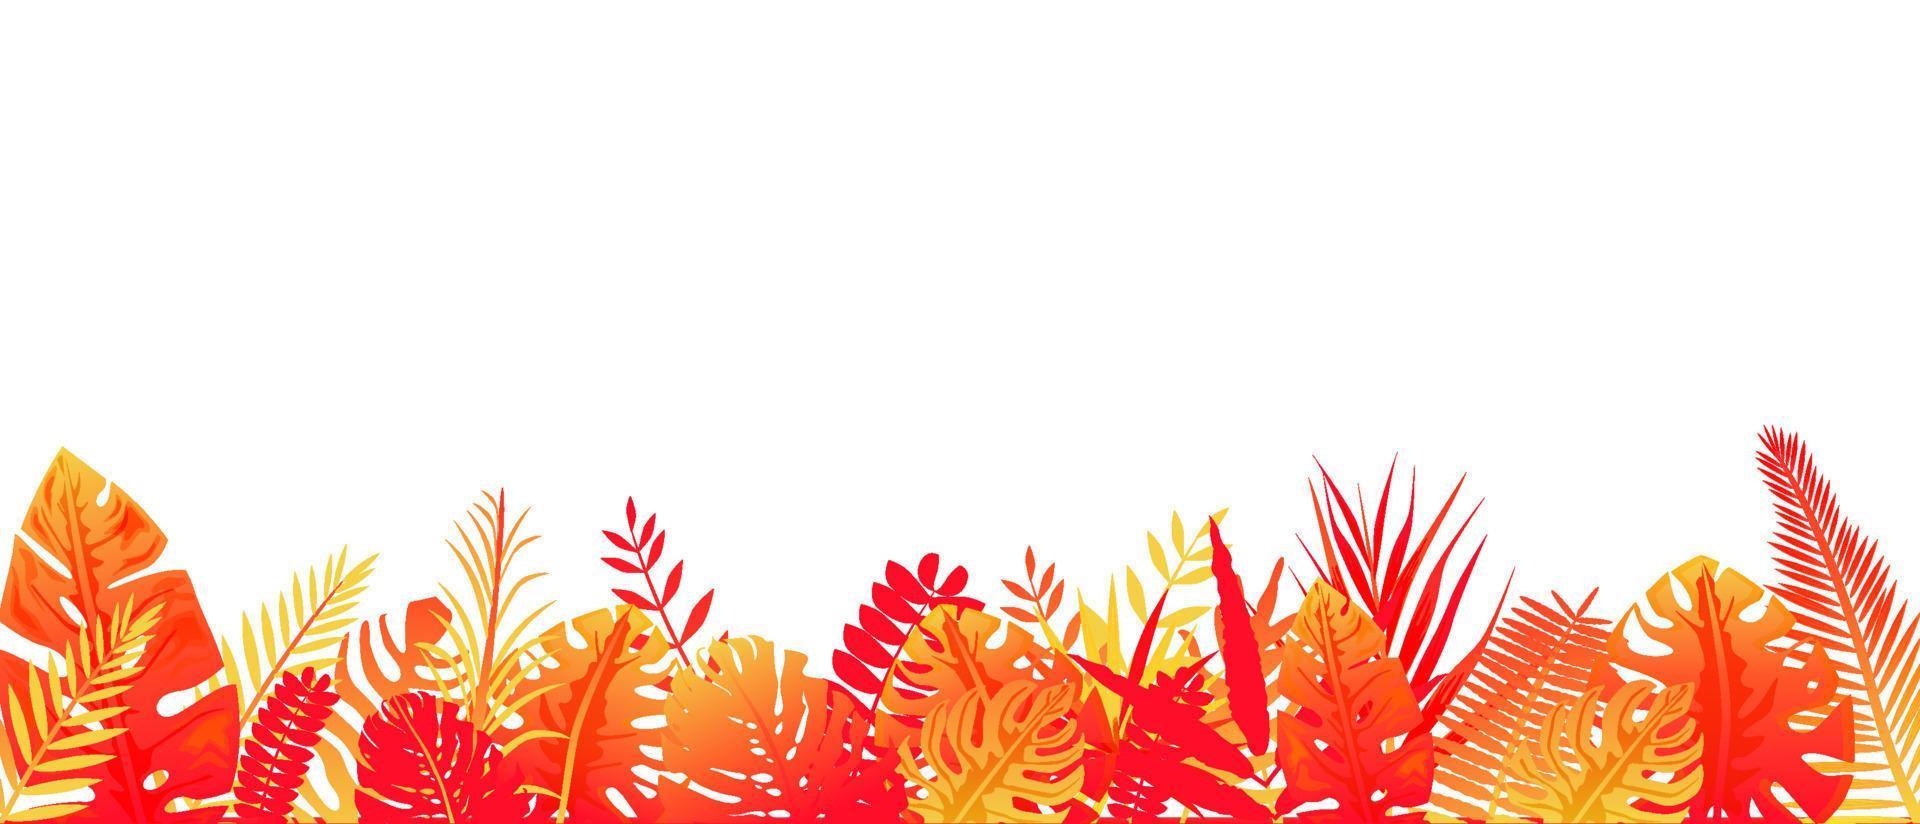 rood geel varen achtergrond. horizontaal tropisch regenwoud decoratie in stralen van instelling zon bloemen botanisch achtergrond elegant helder rood varen bladeren wild natuurlijk gazon in vector verzadigd kleuren.